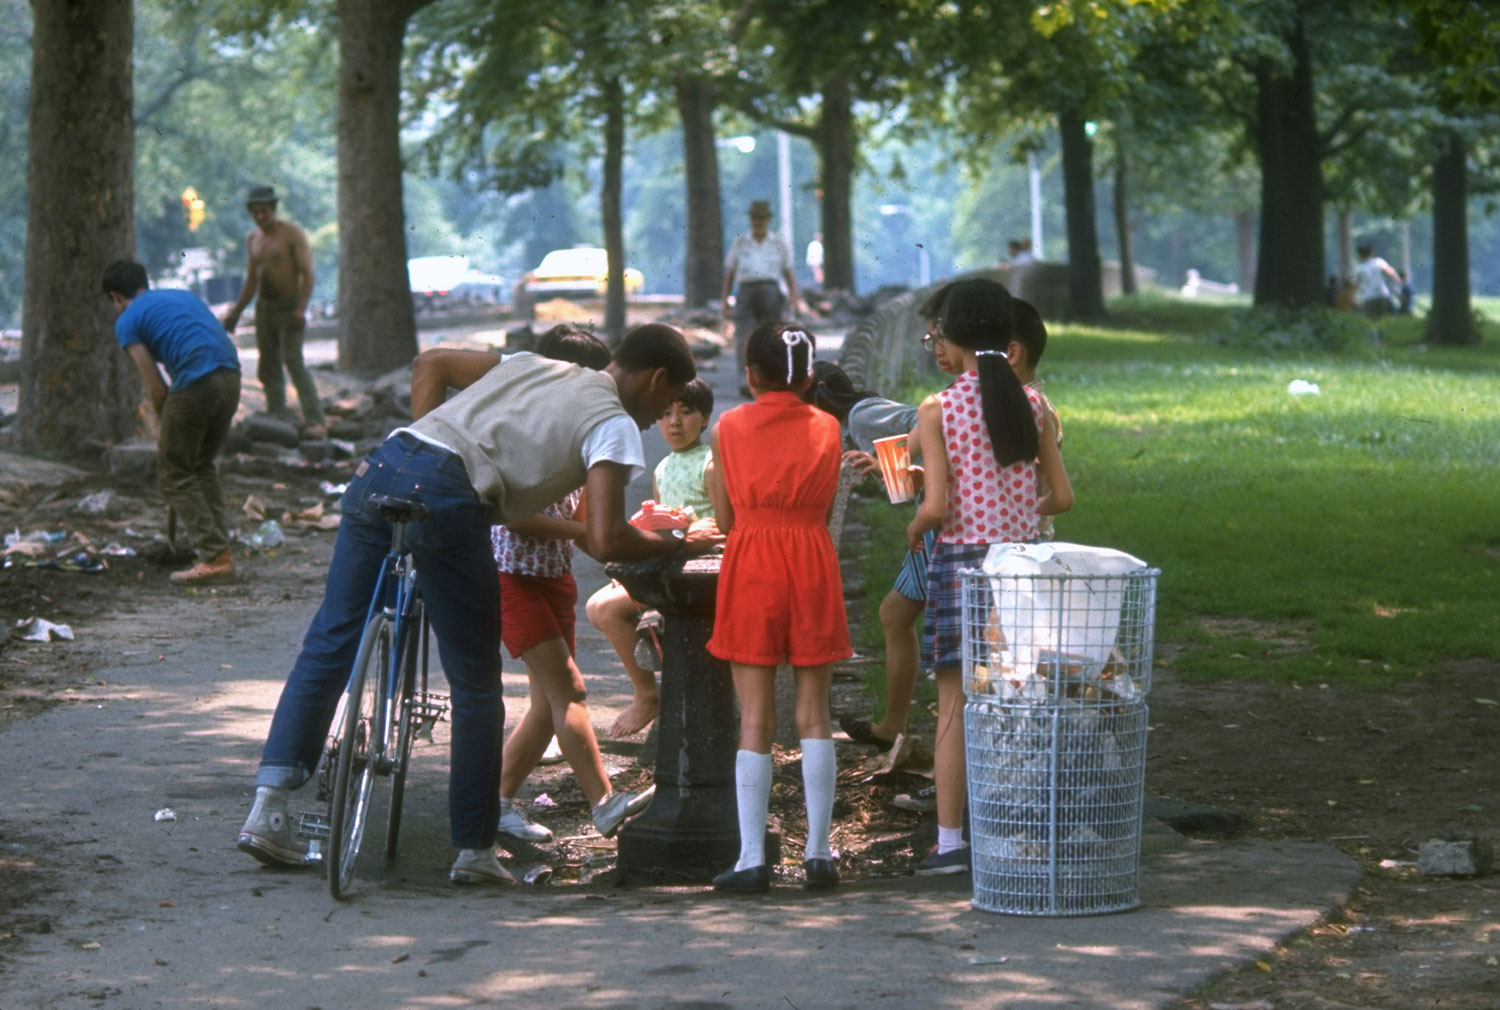 Children in Central Park, 1969.